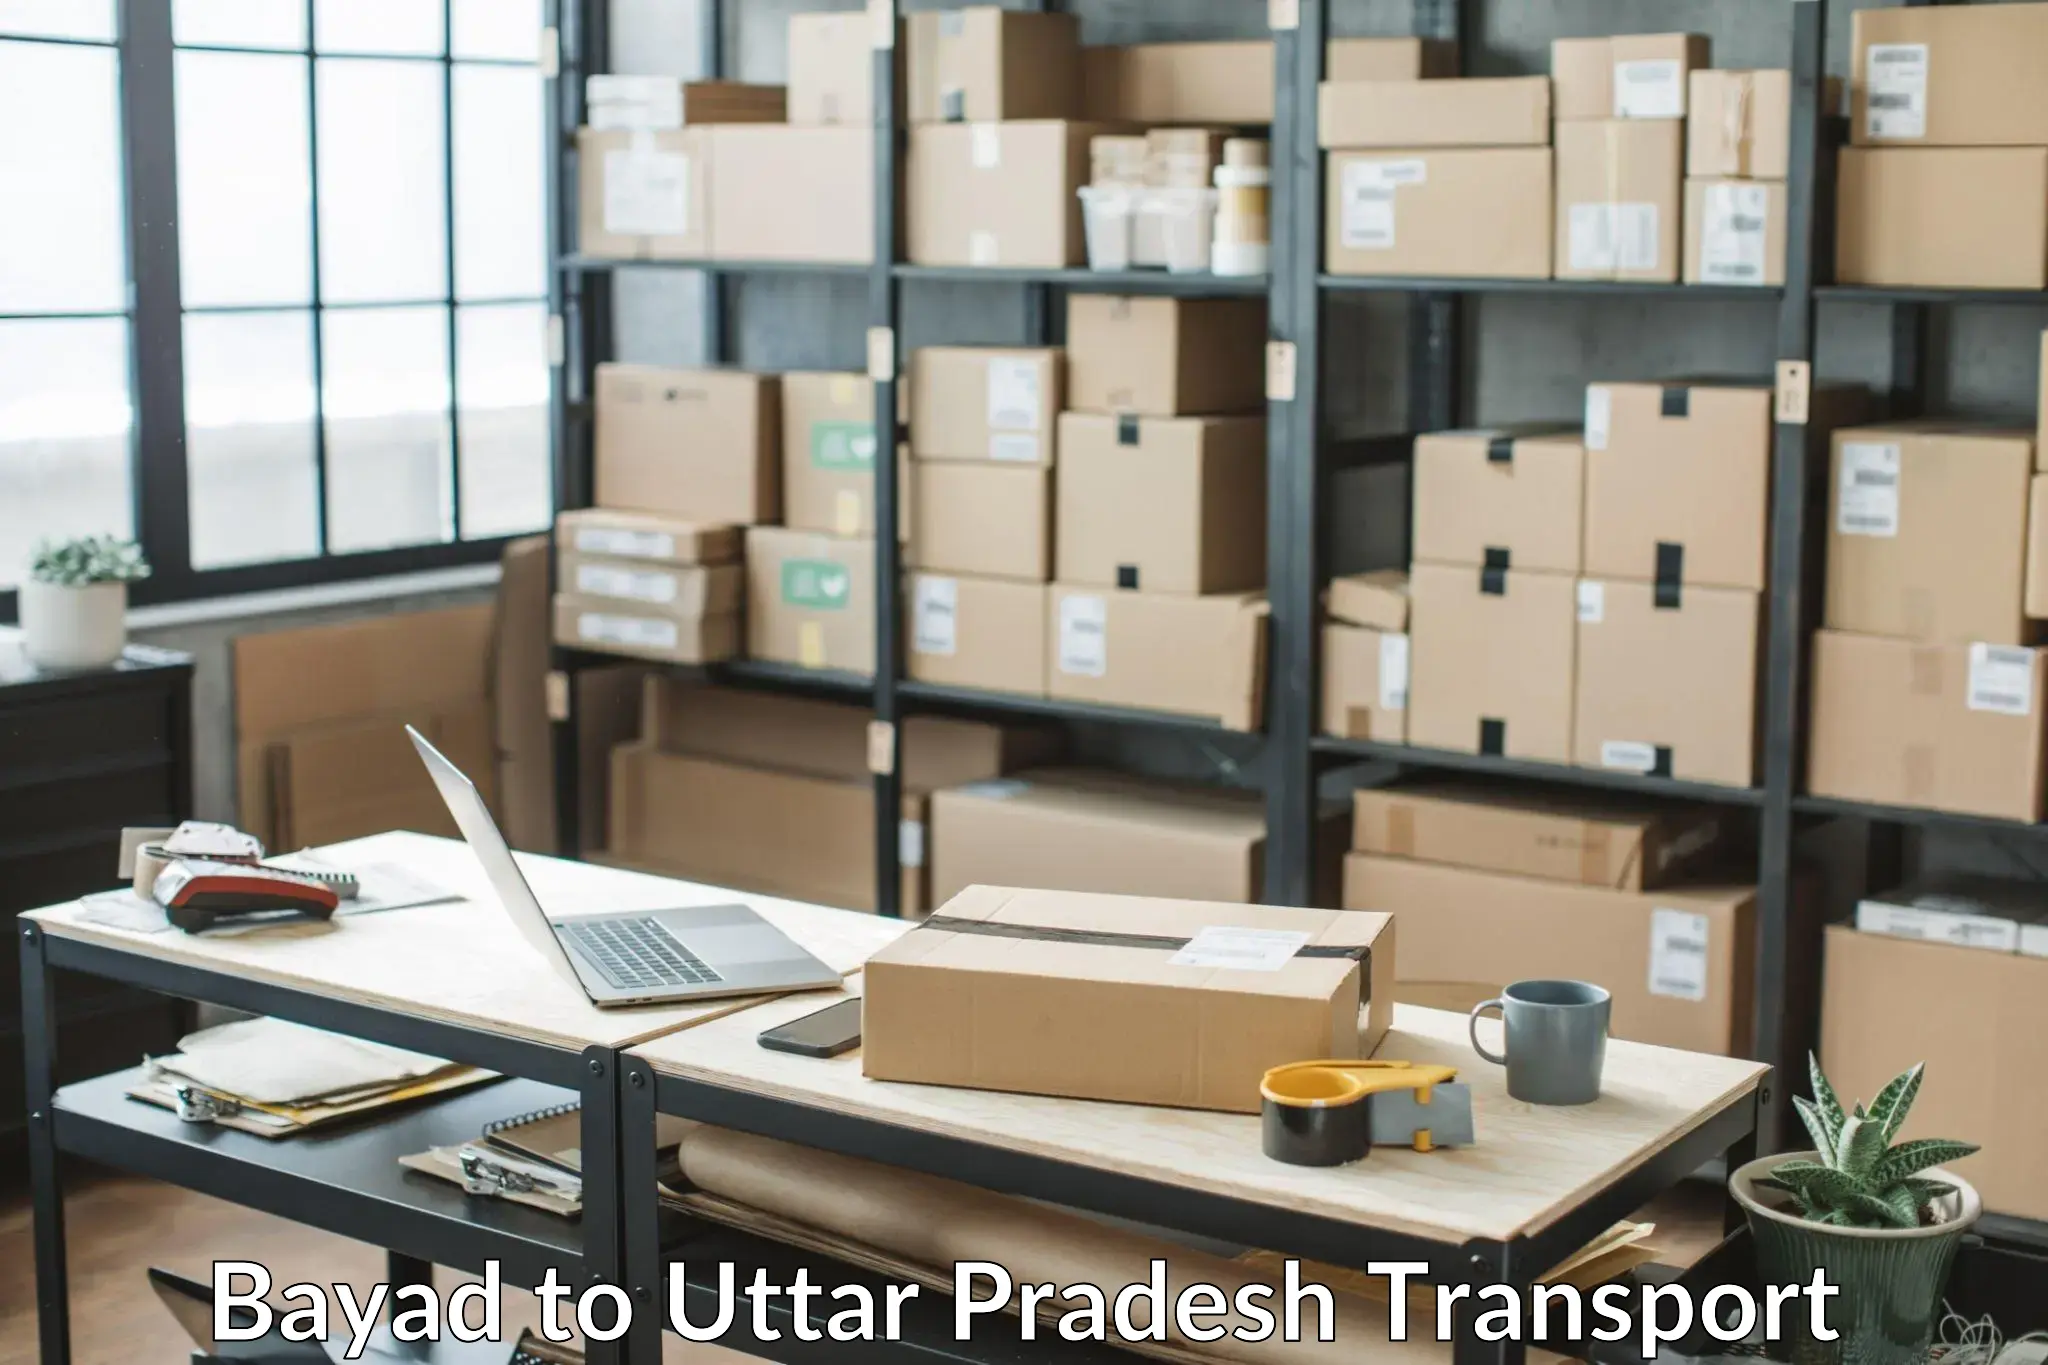 Bike shipping service Bayad to Uttar Pradesh